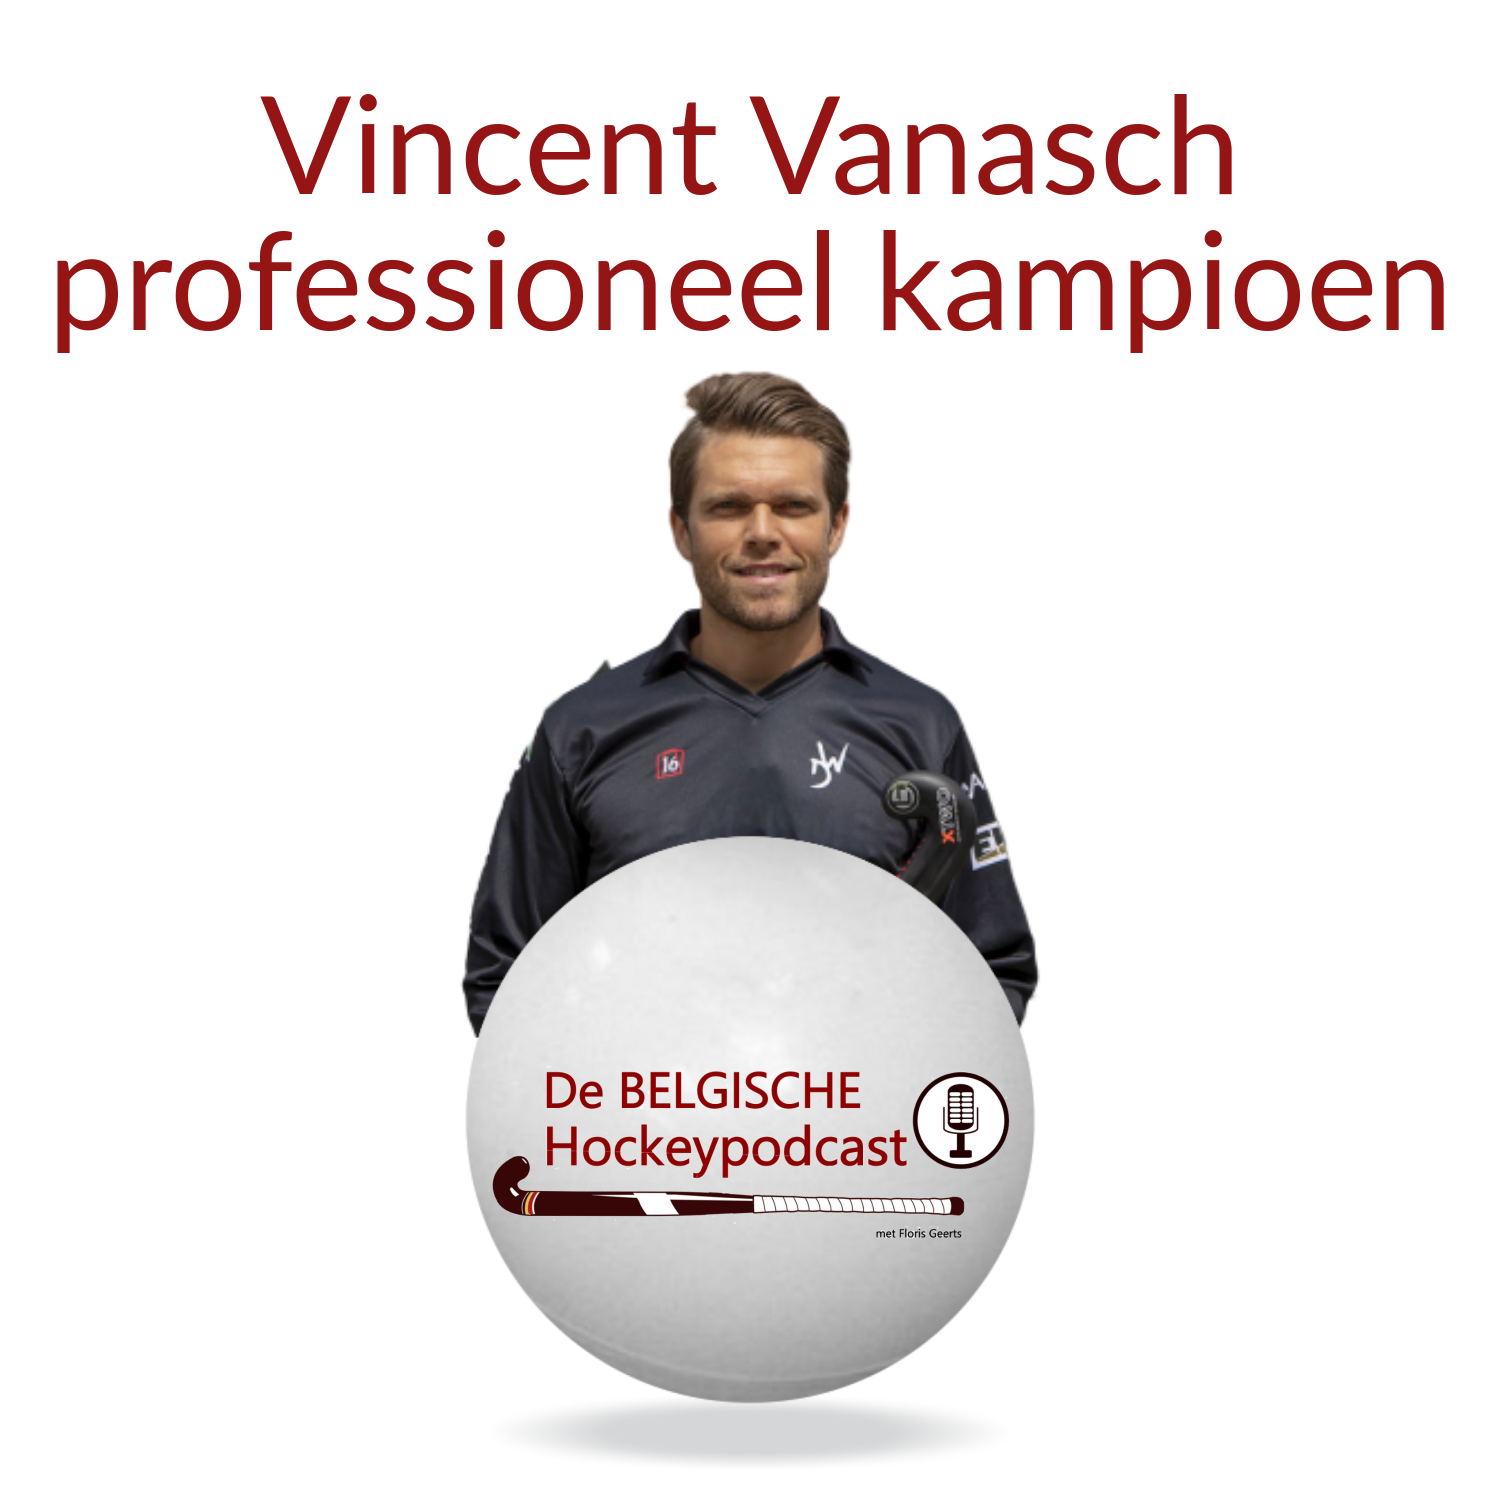 Vincent Vanasch